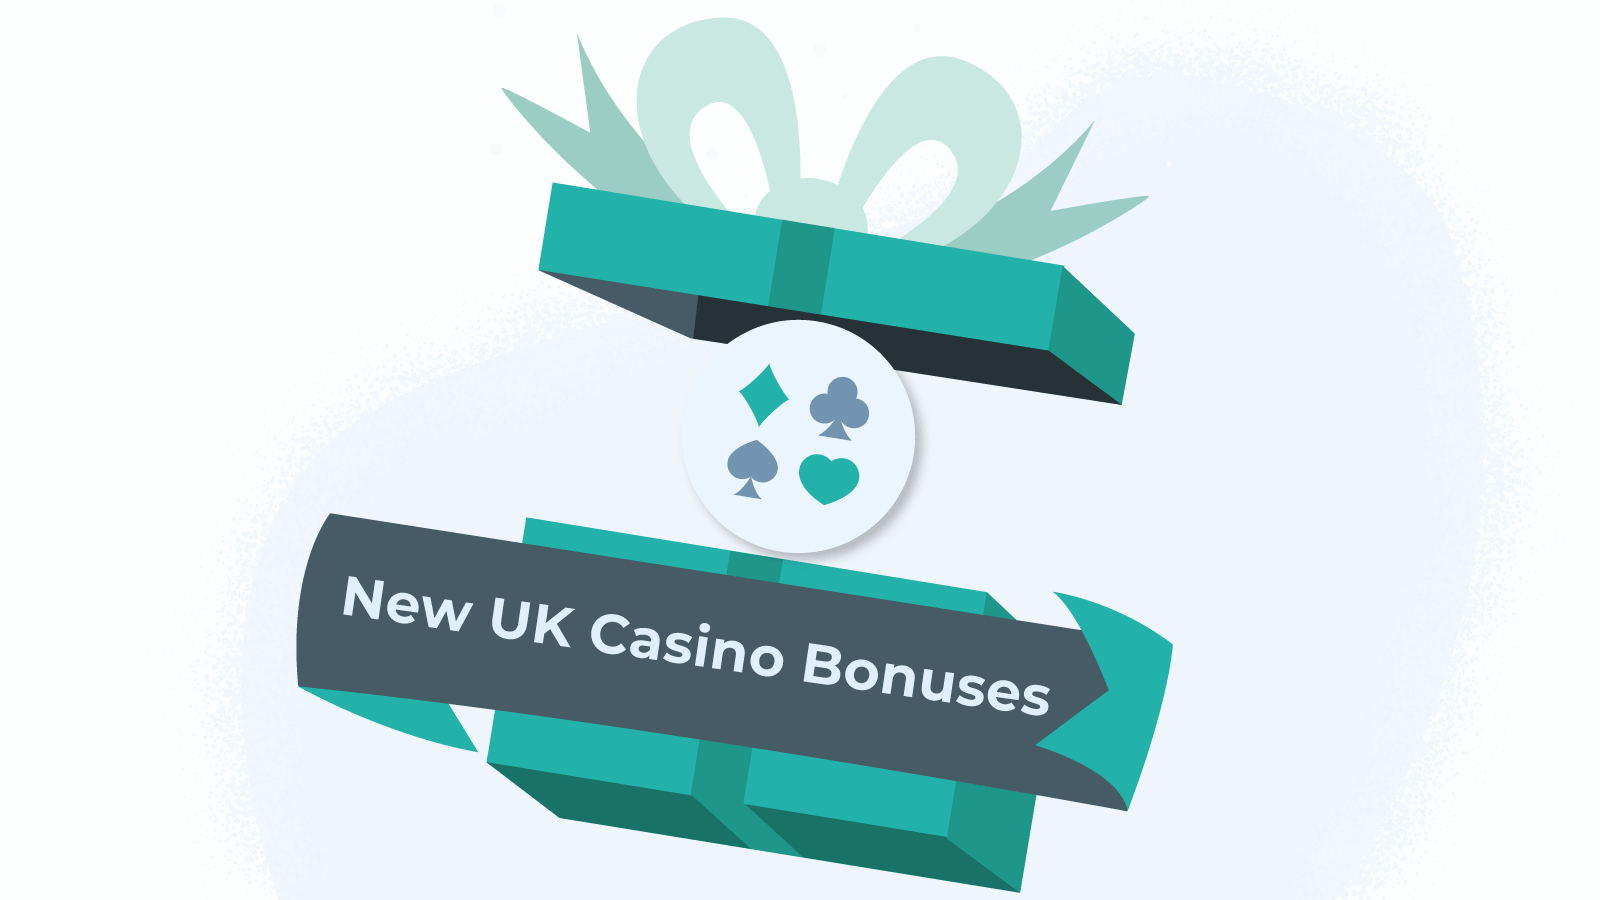 New UK Casino Bonuses